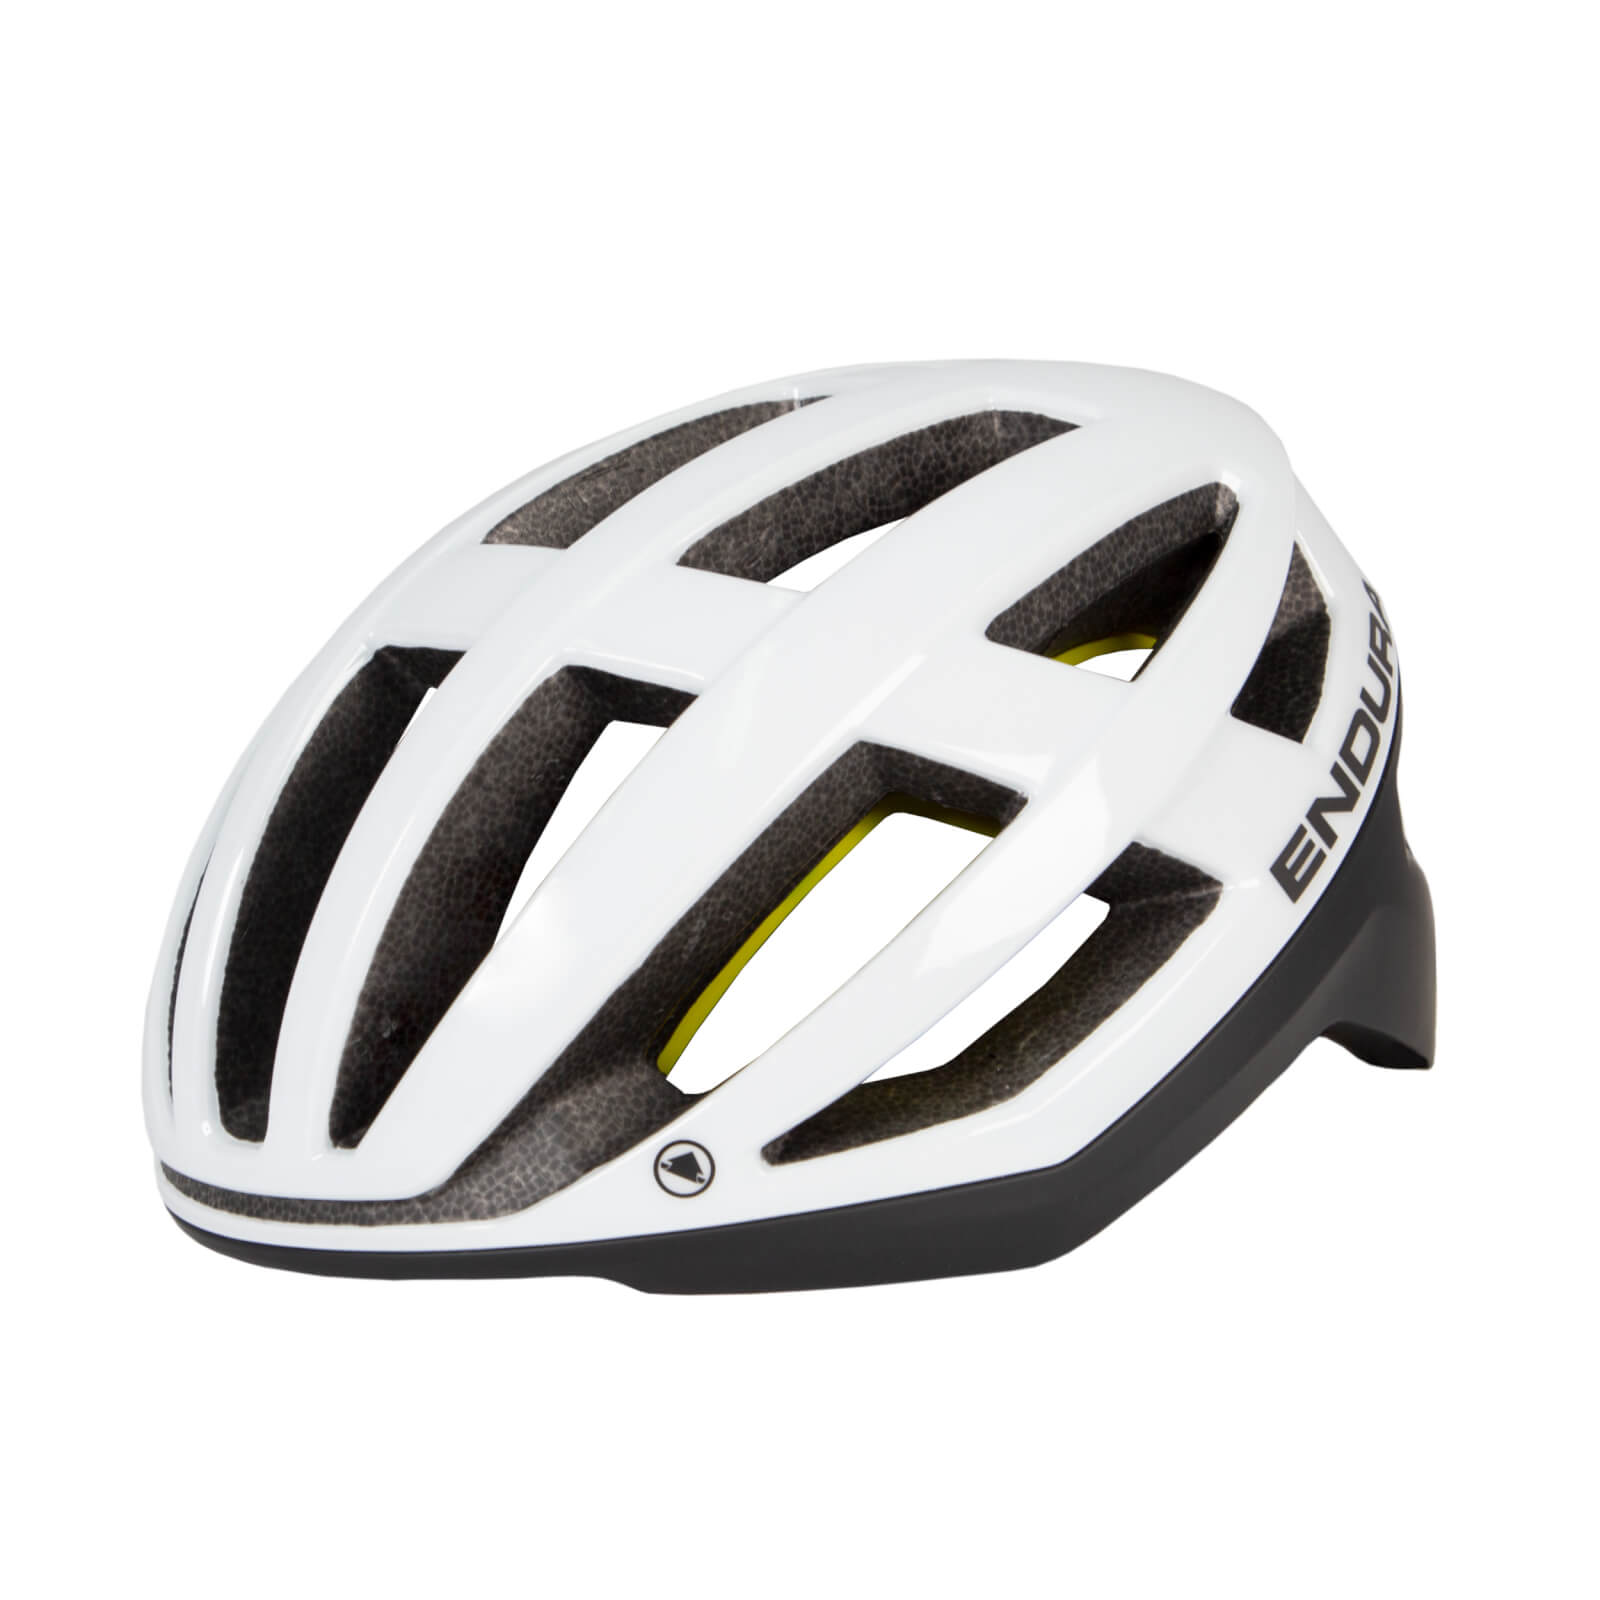 Fs260-pro Mips Helmet Ii - White